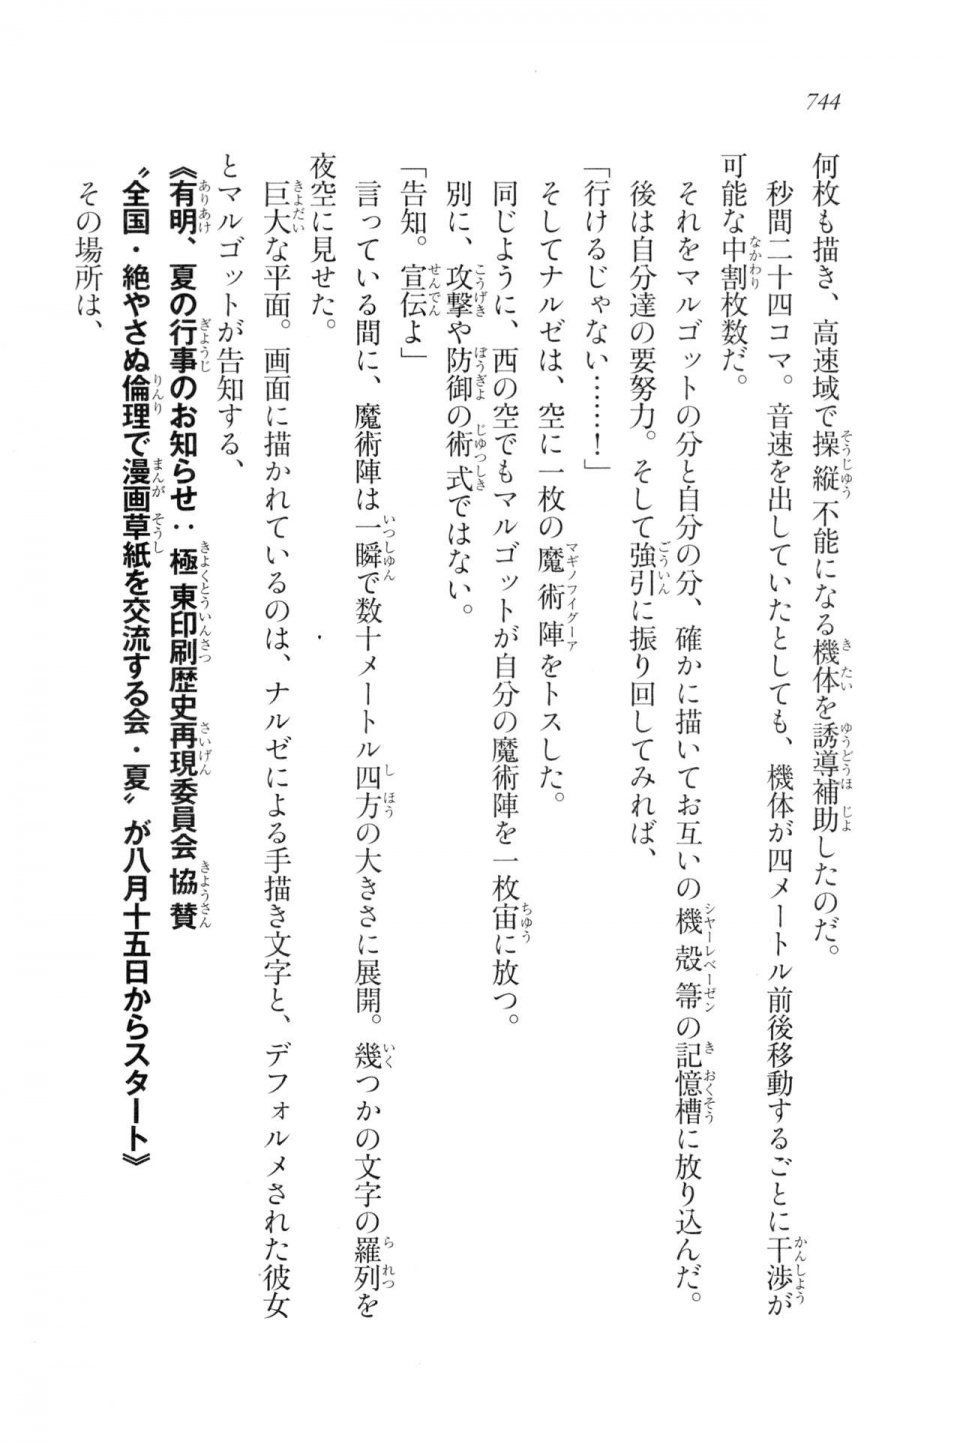 Kyoukai Senjou no Horizon LN Vol 20(8B) - Photo #744